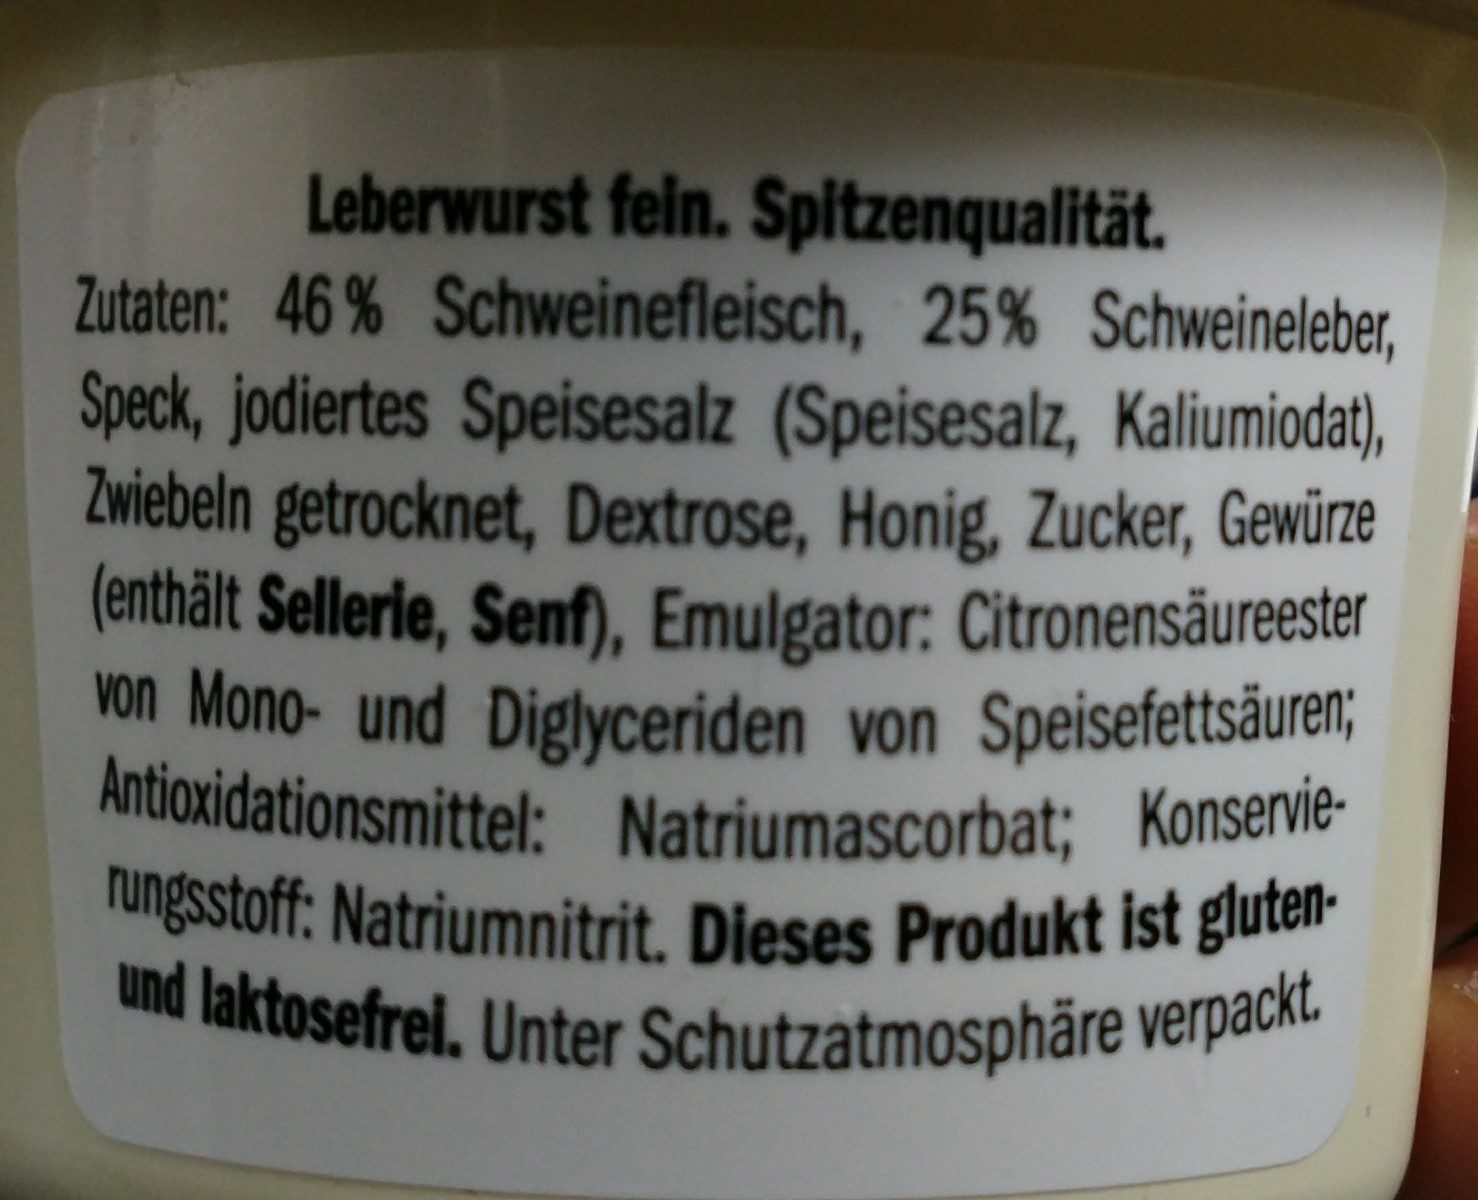 Leberwurst, pâte de foi - Zutaten